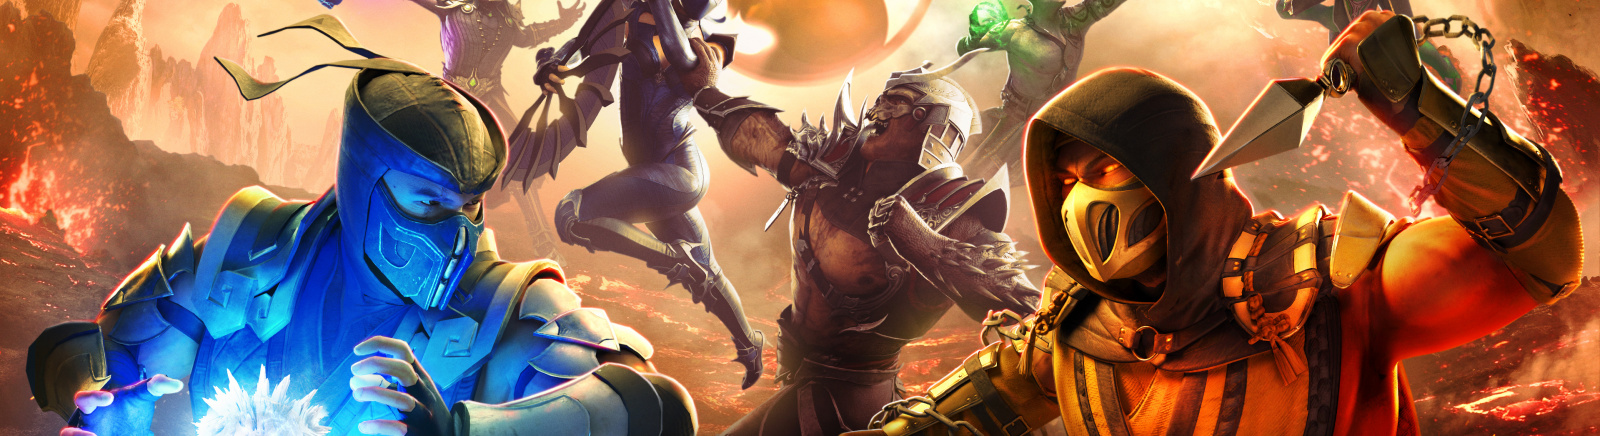 Дата выхода Mortal Kombat: Onslaught  на iOS и Android в России и во всем мире